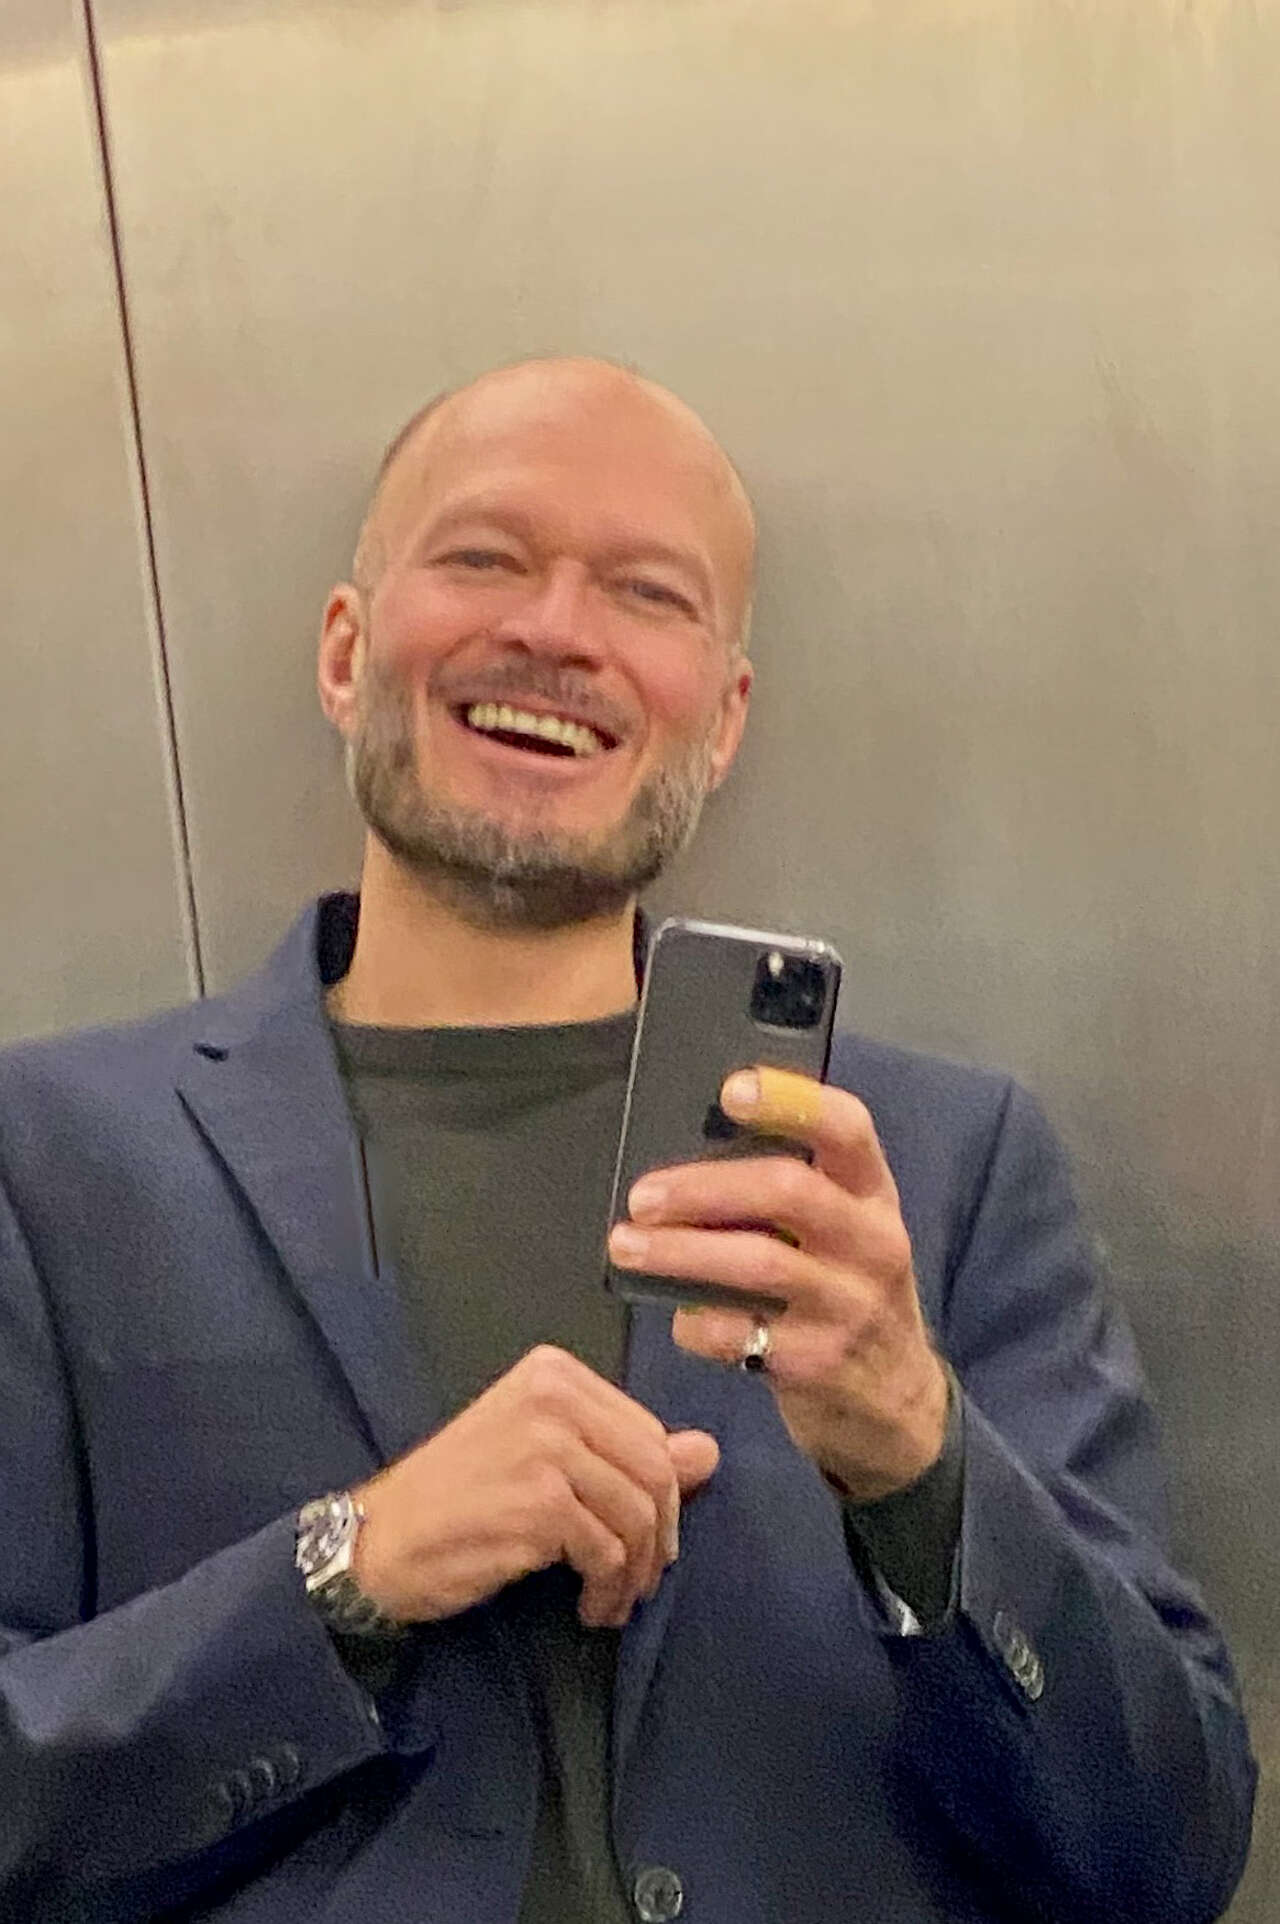 Tomas Renner mit Iphone im Spiegel eines Aufzugs